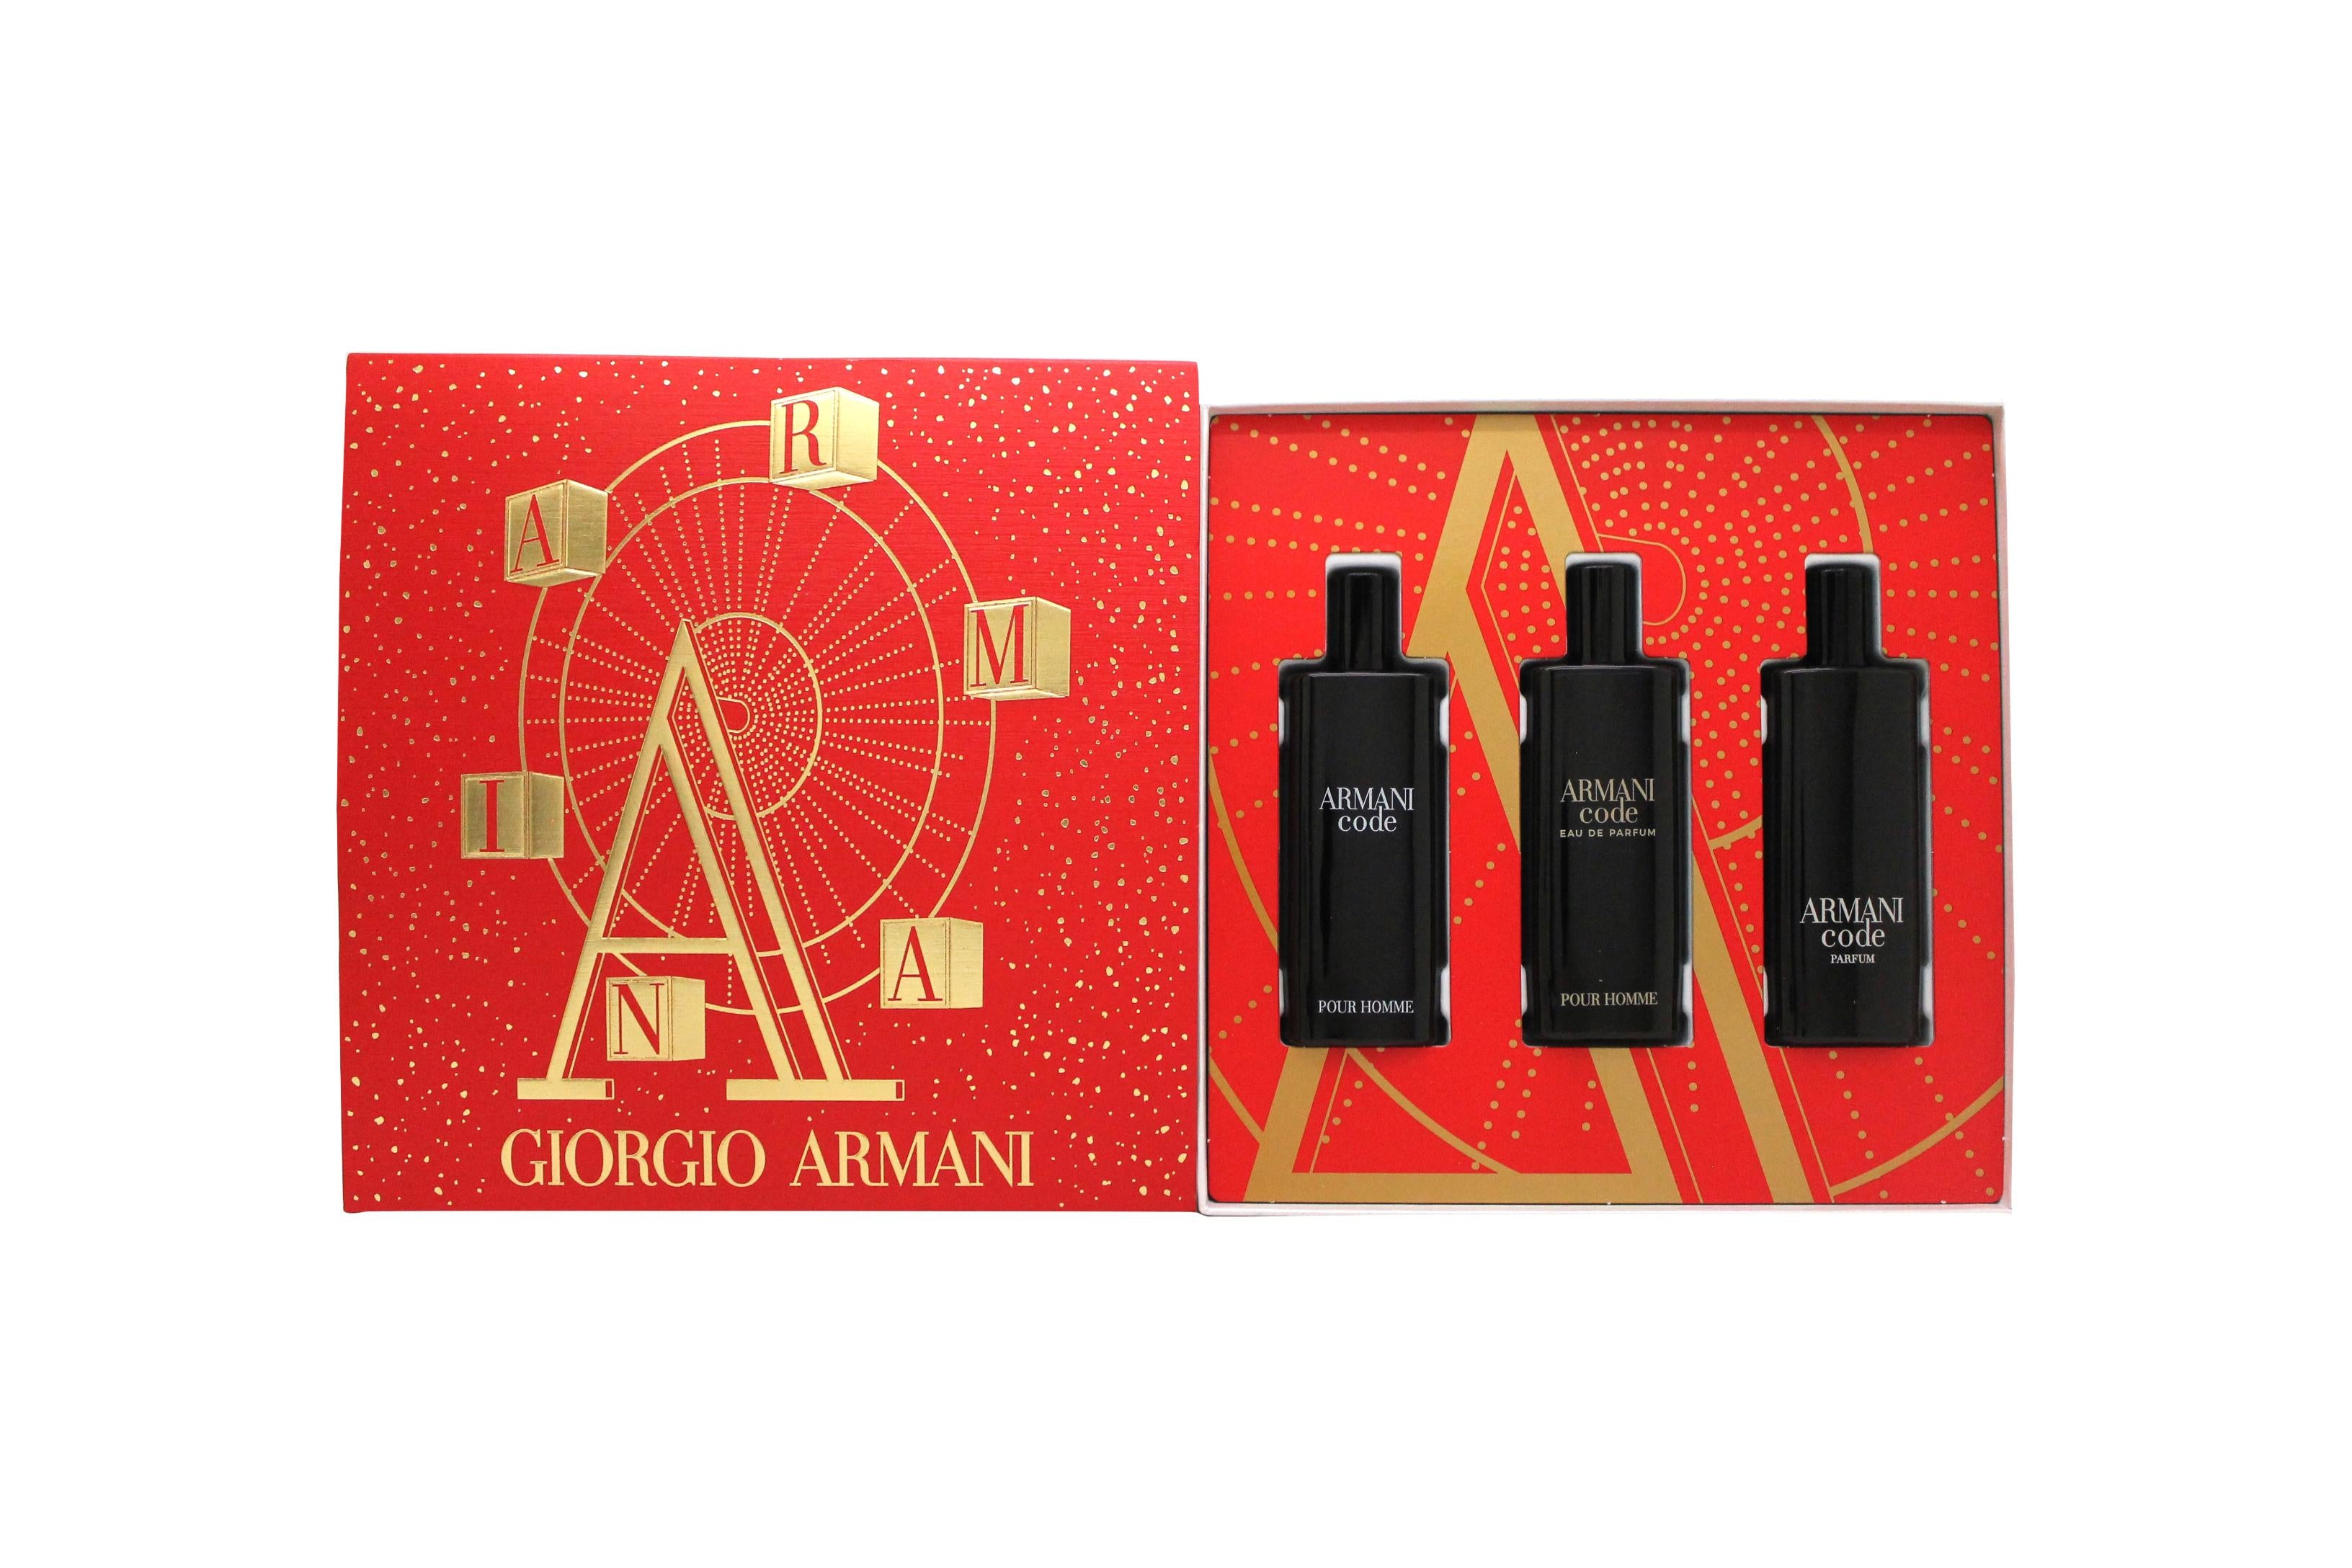 Armani Code Eau de Toilette Fragrance Gift Set | Harrods US